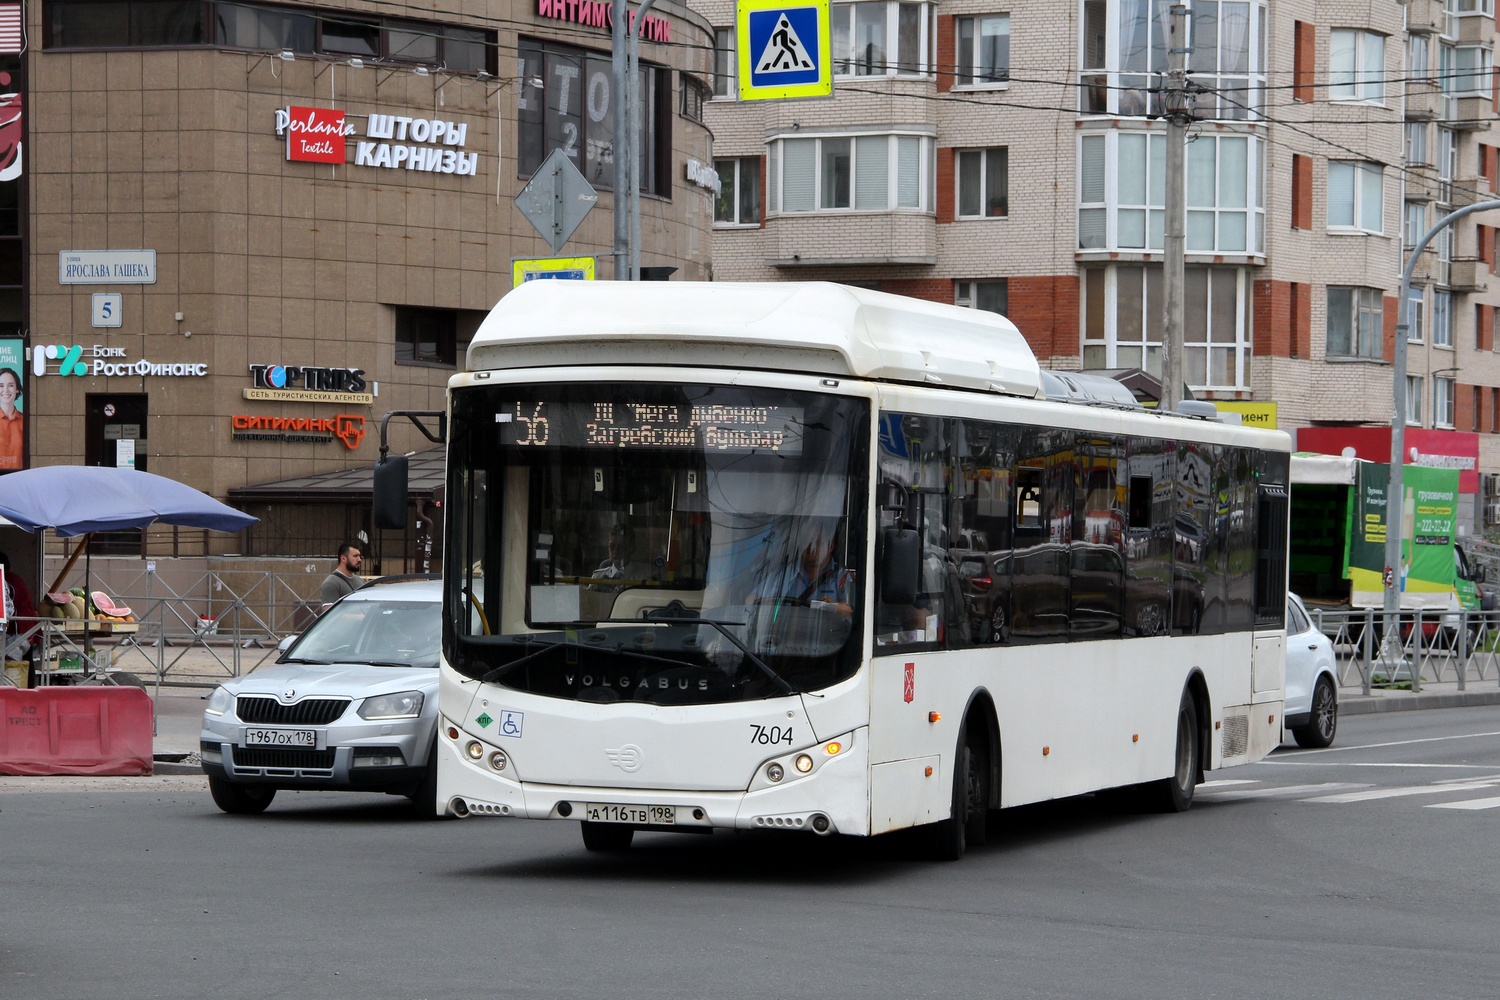 Szentpétervár, Volgabus-5270.G0 sz.: 7604